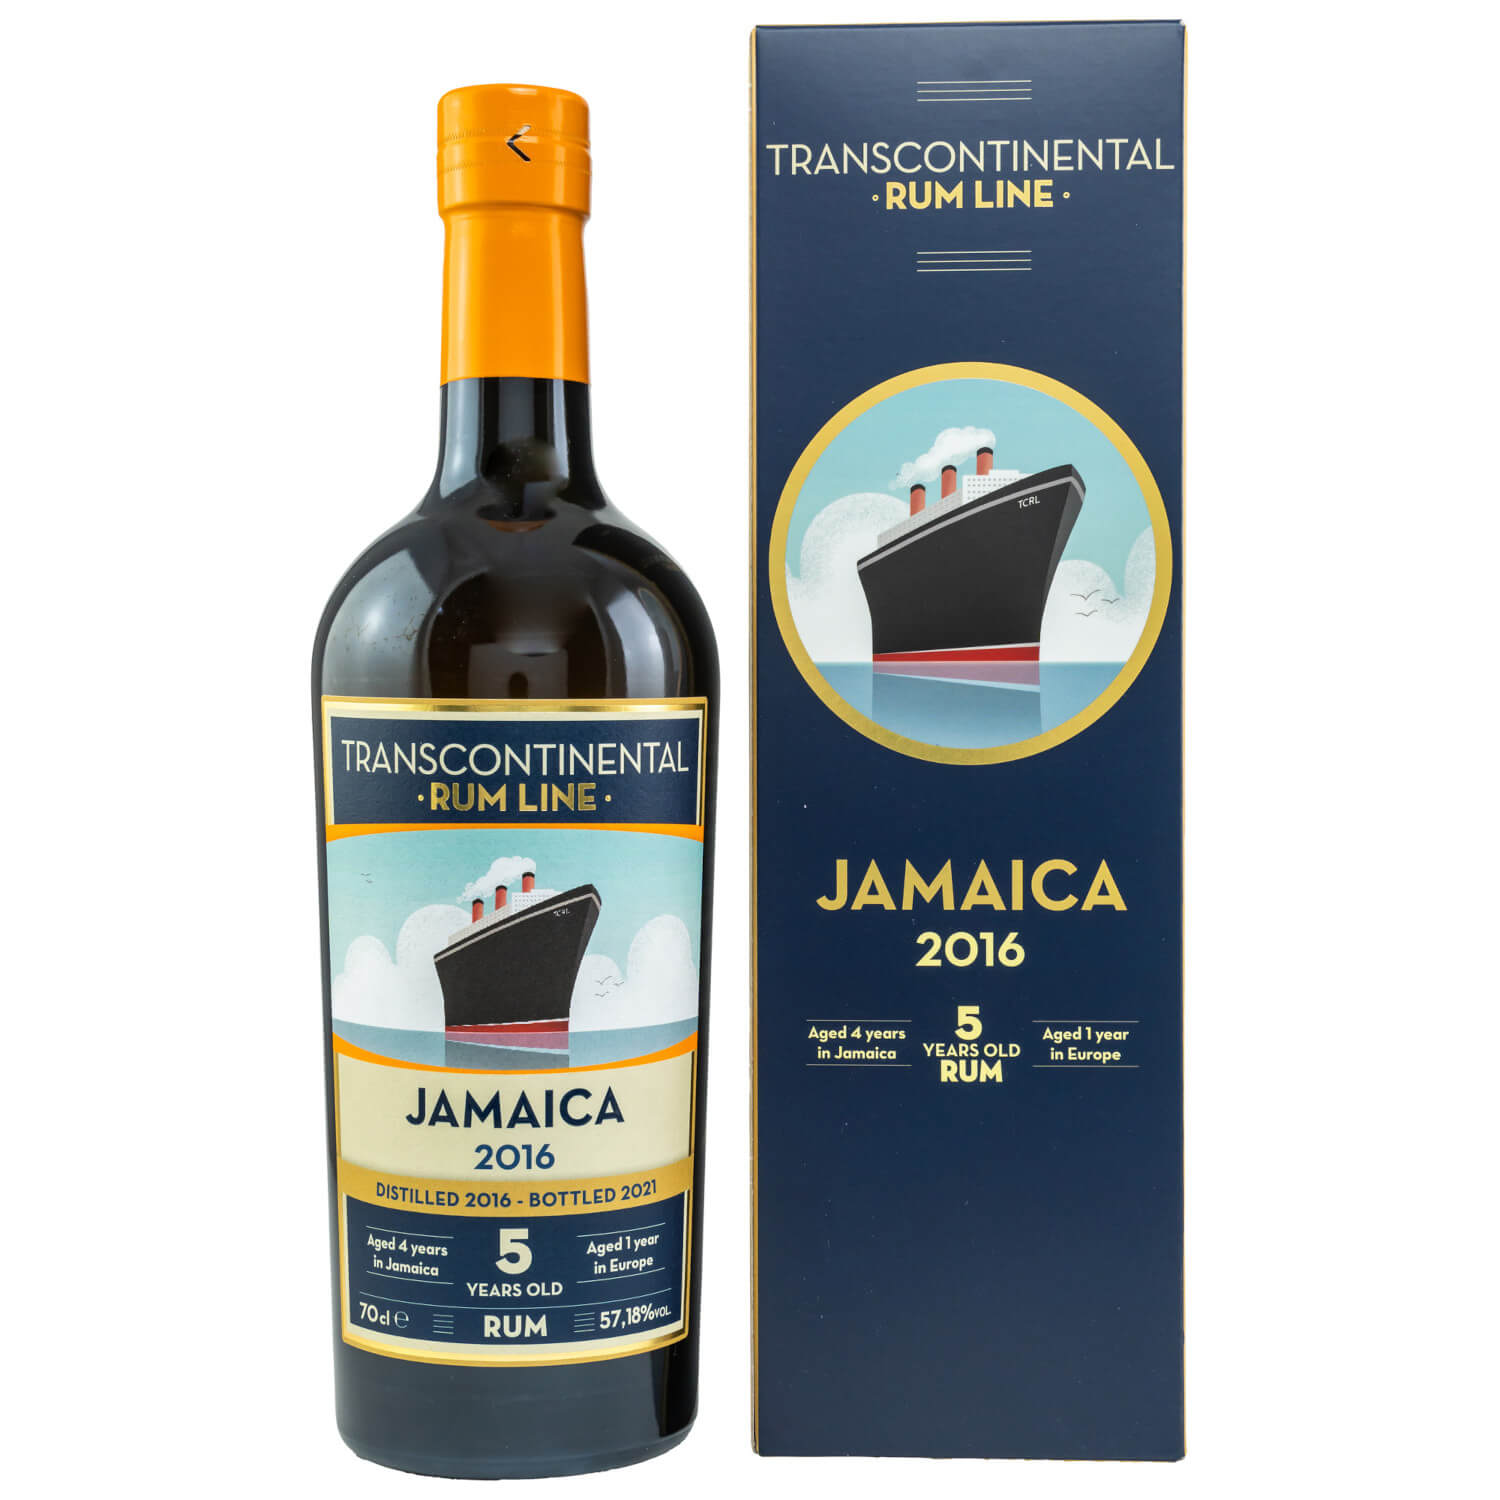 Flasche Transcontinental Rum Line Jamaica 2016 Rum 